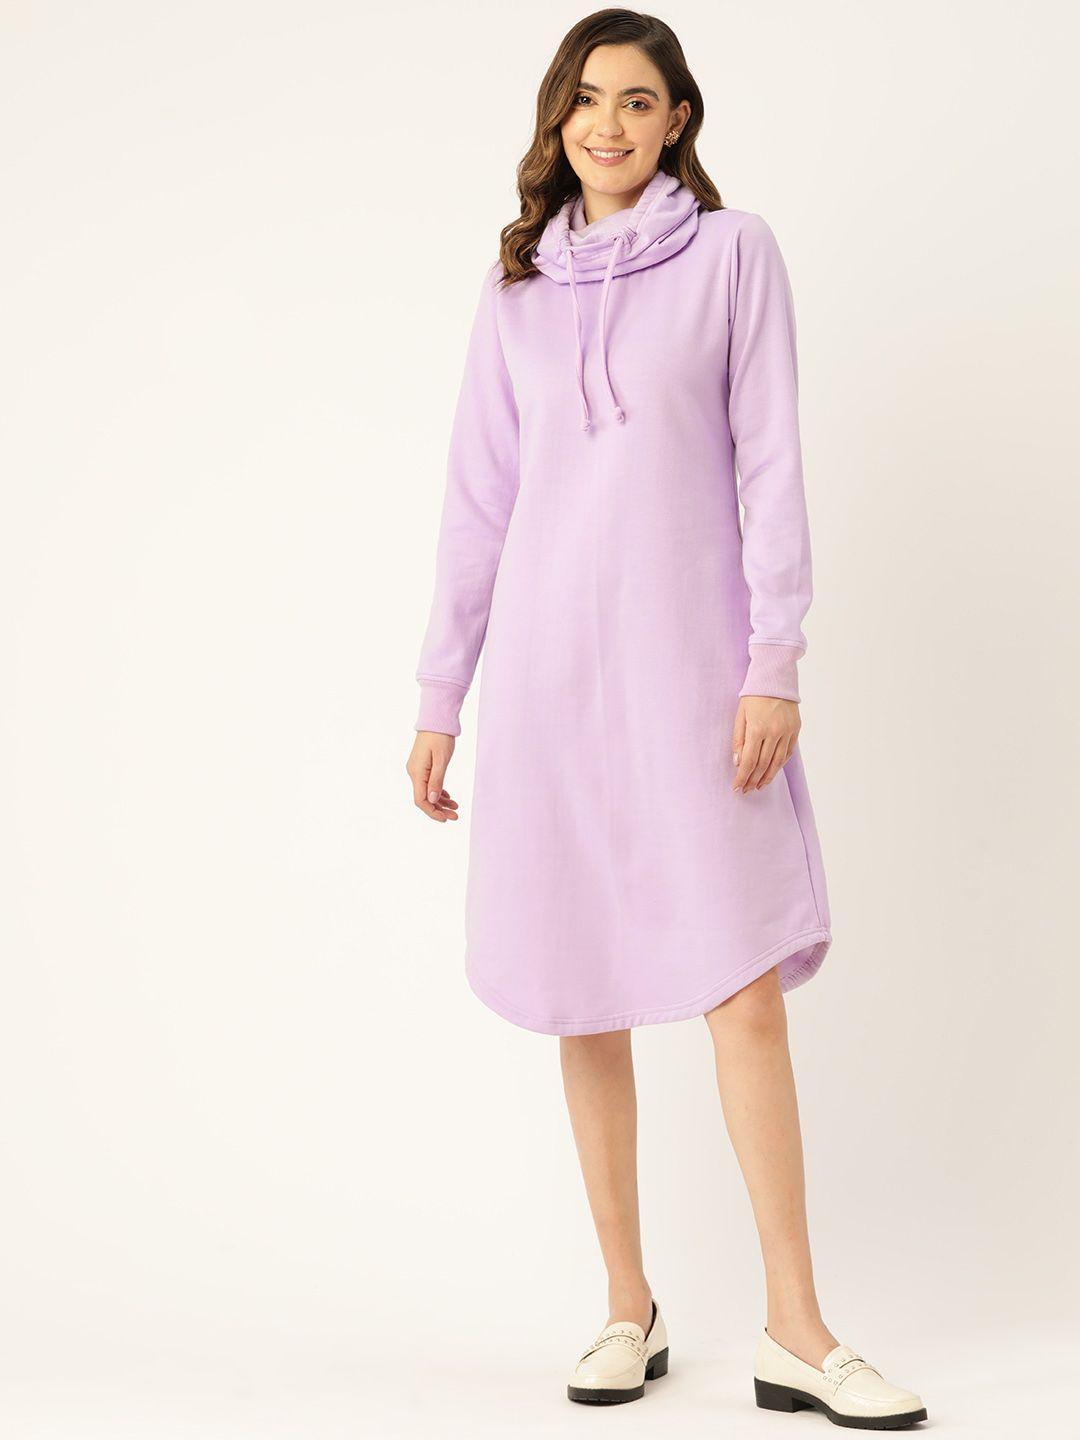 brinns fleece hooded a-line dress